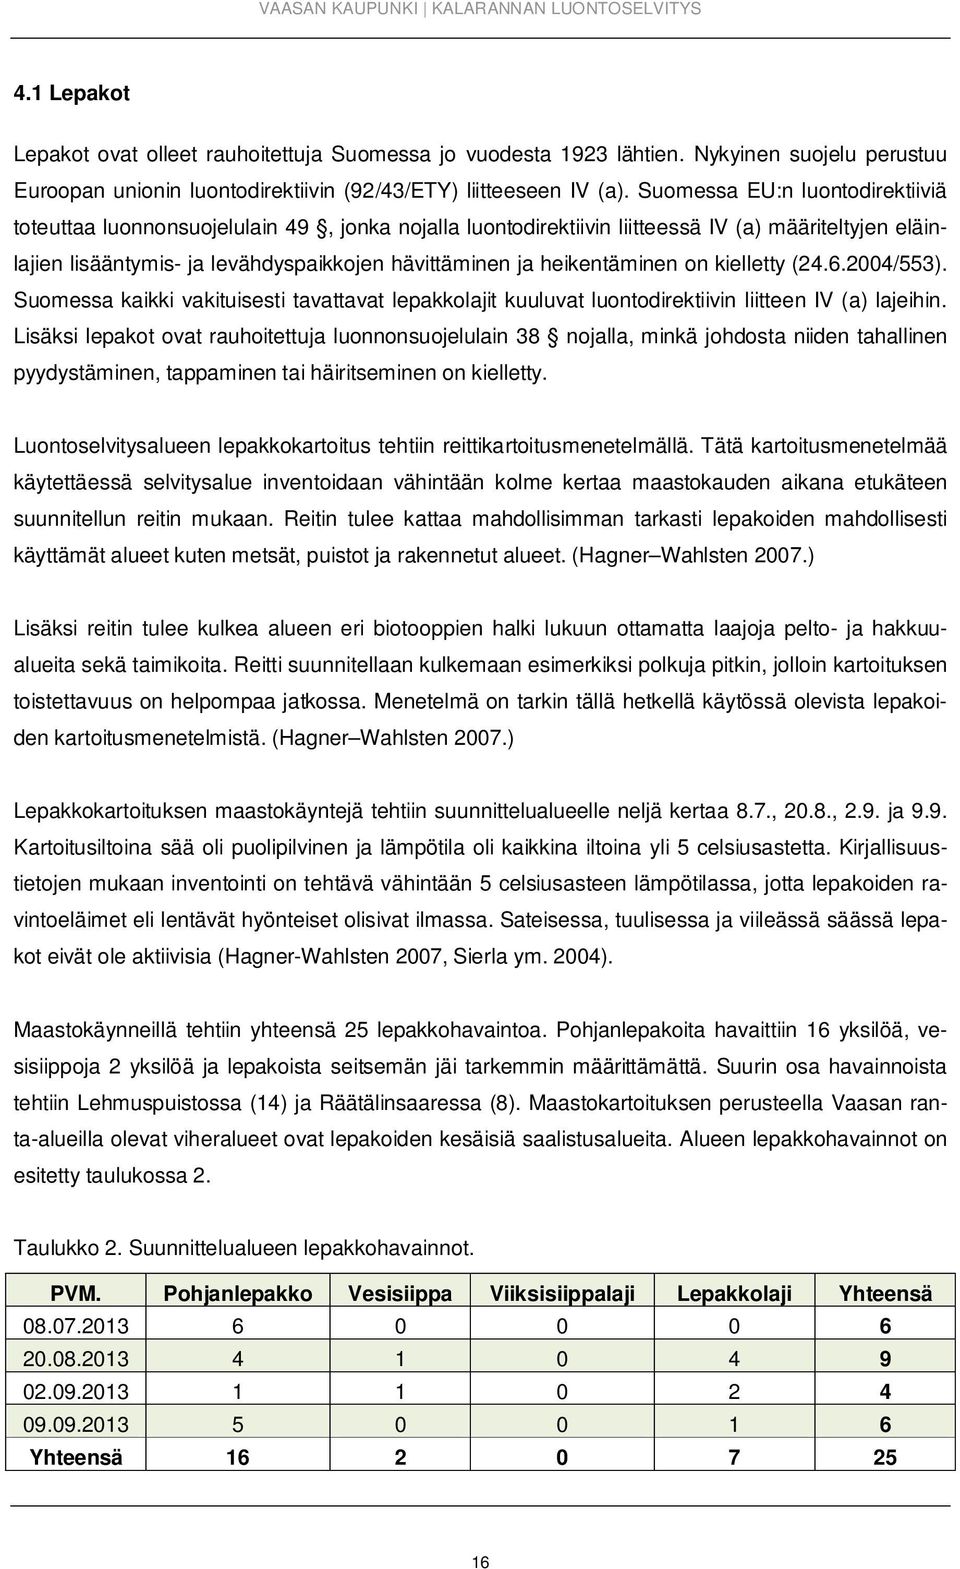 heikentäminen on kielletty (24.6.2004/553). Suomessa kaikki vakituisesti tavattavat lepakkolajit kuuluvat luontodirektiivin liitteen IV (a) lajeihin.